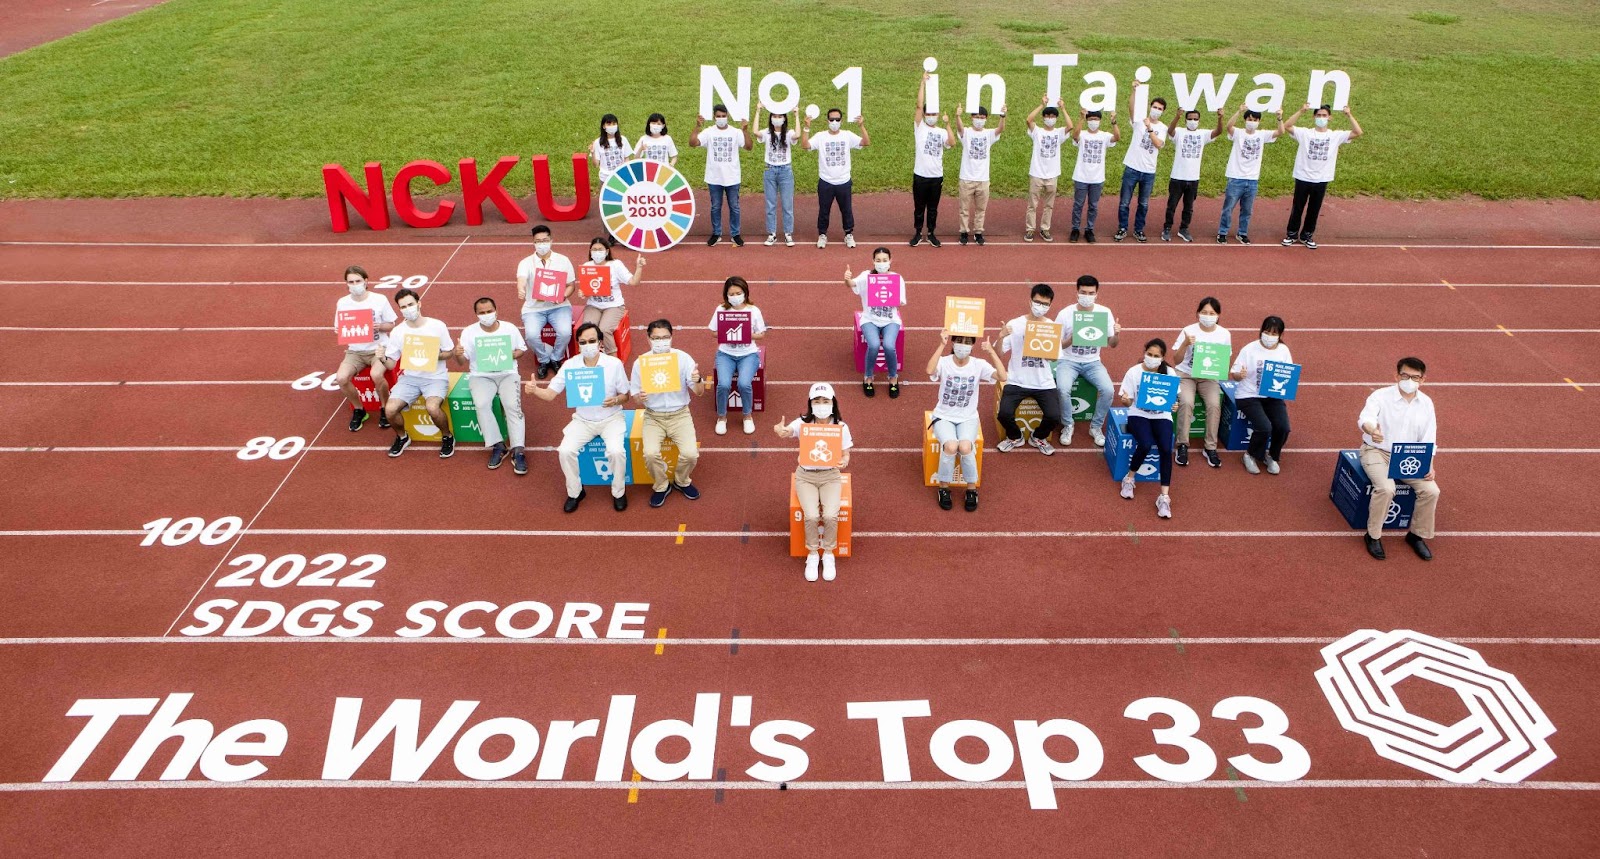 NCKU đã chiếm vị trí đầu tiên trong số các trường đại học Đài Loan và xếp hạng 33 trên toàn thế giới trong Bảng xếp hạng THE Impact Rankings năm 2022